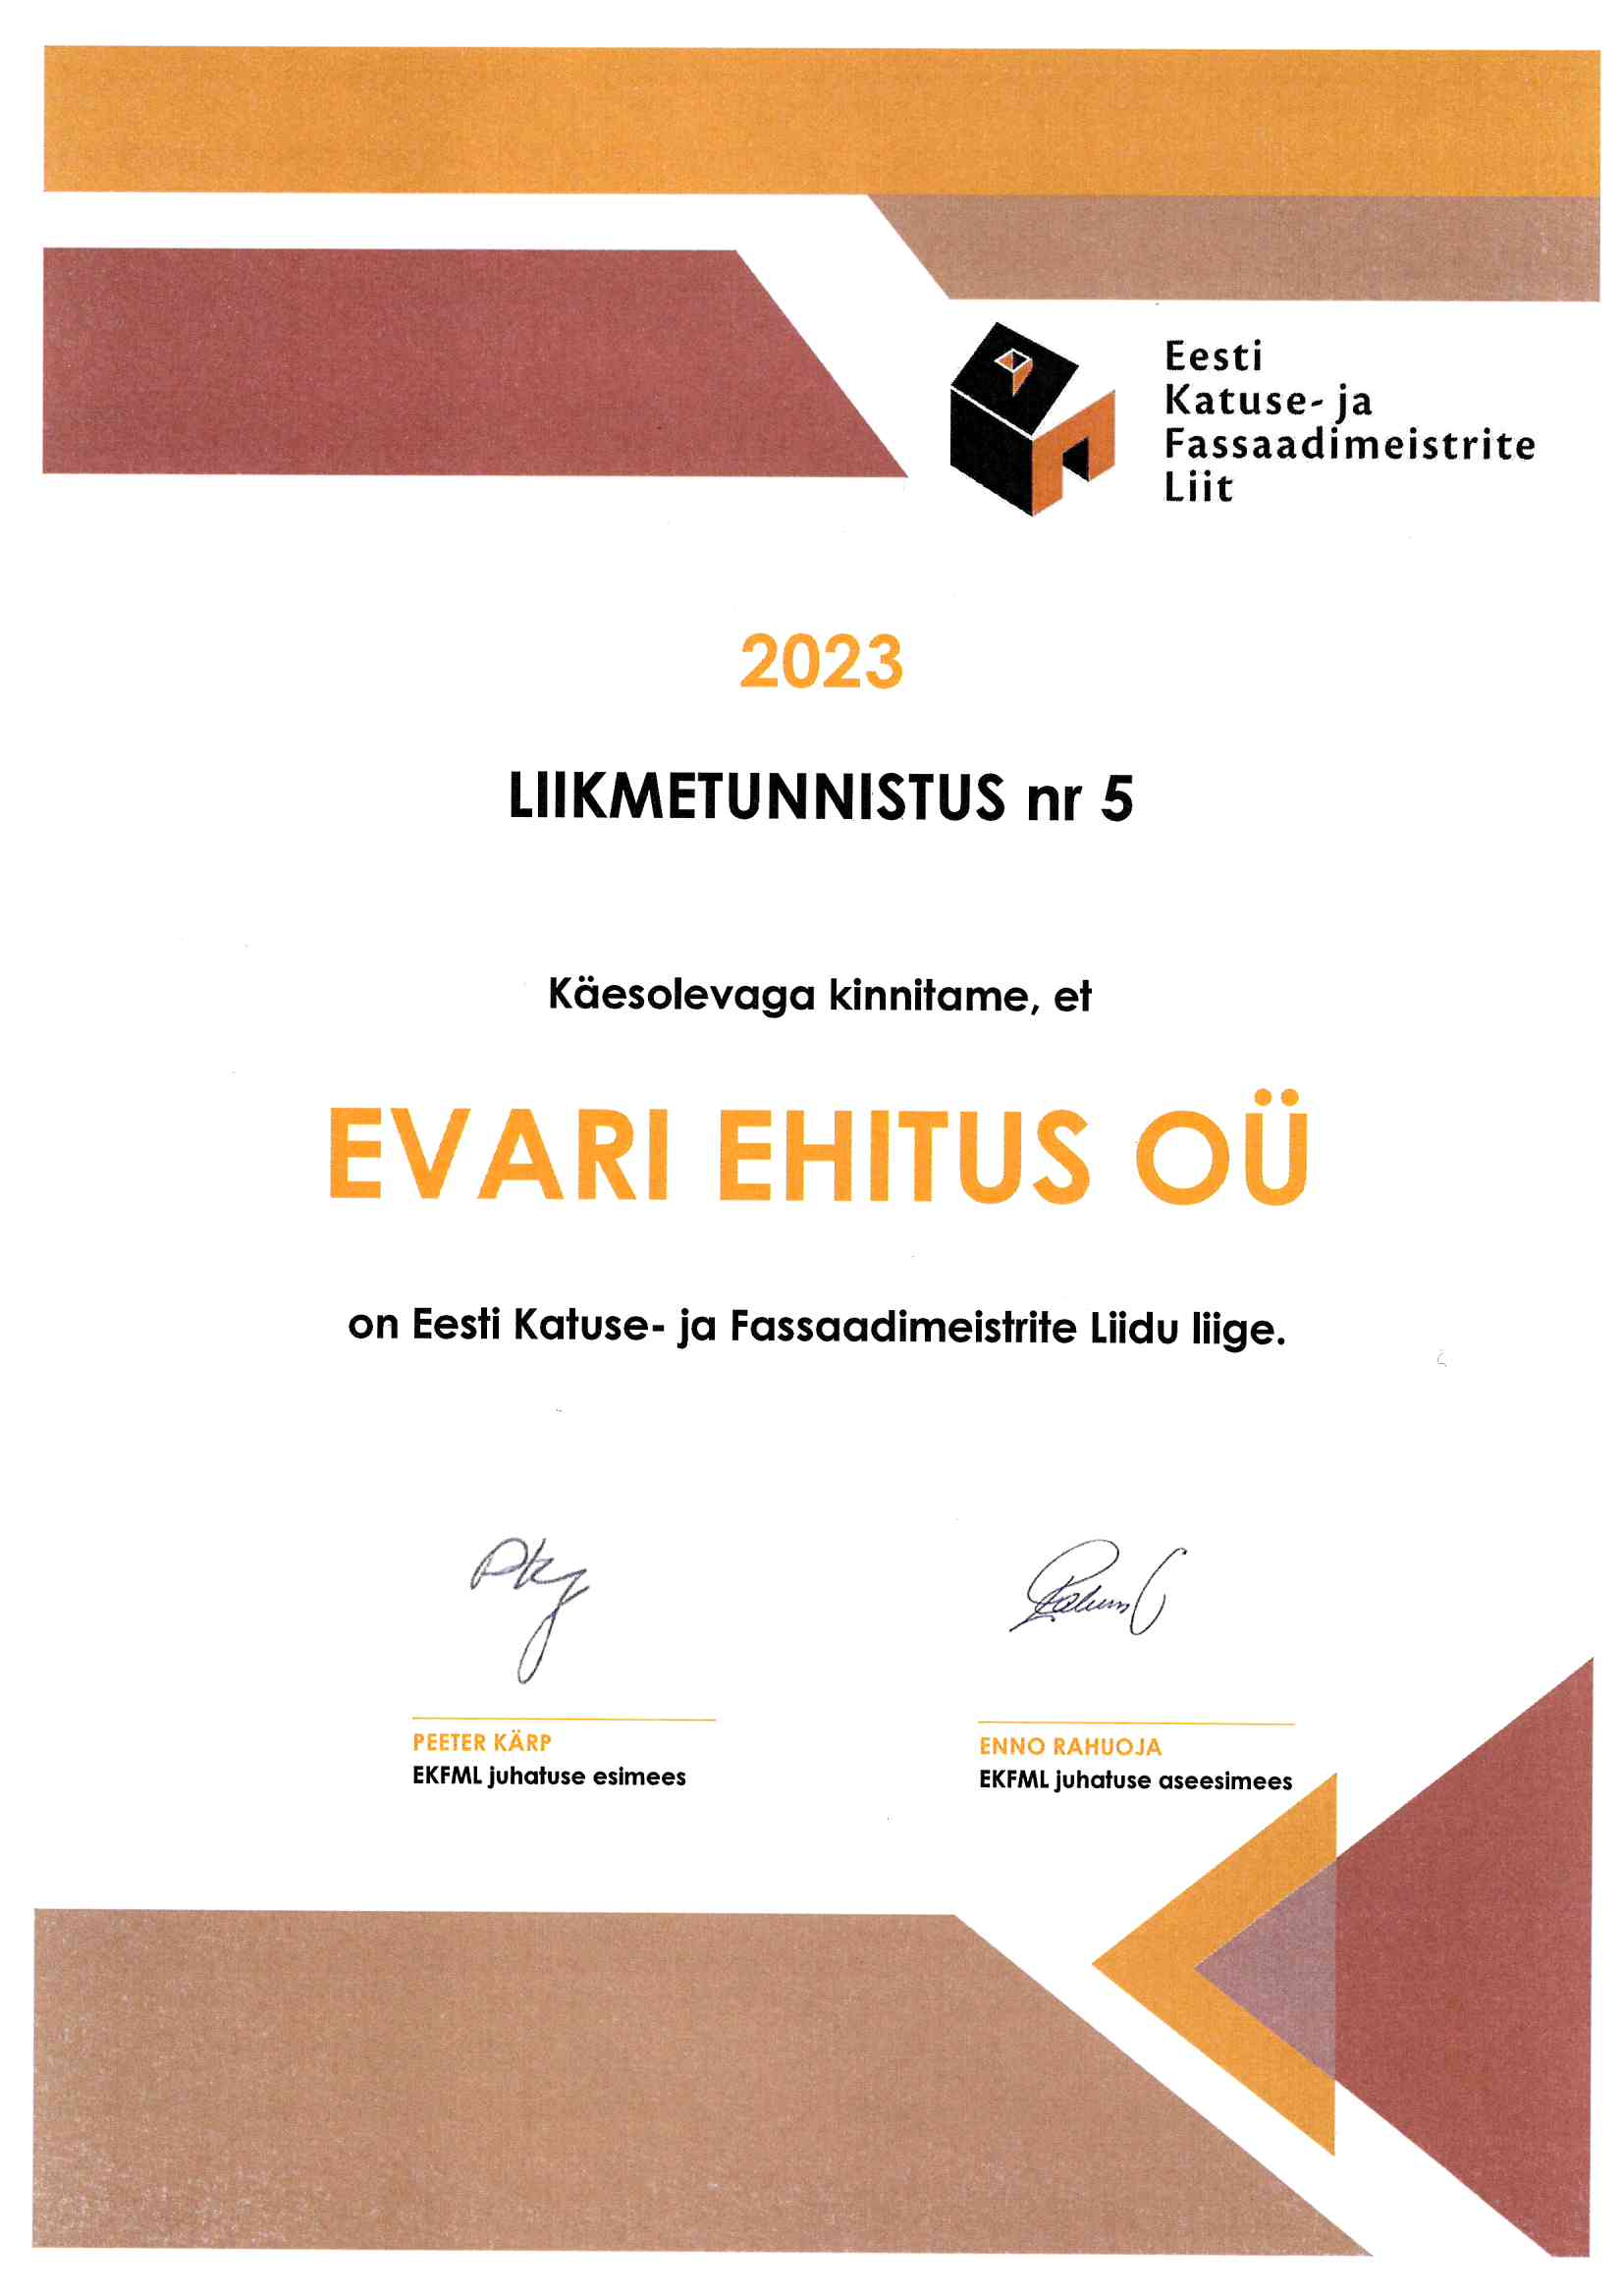 Eesti Katuse- ja Fassaadimeistrite Liit 2023